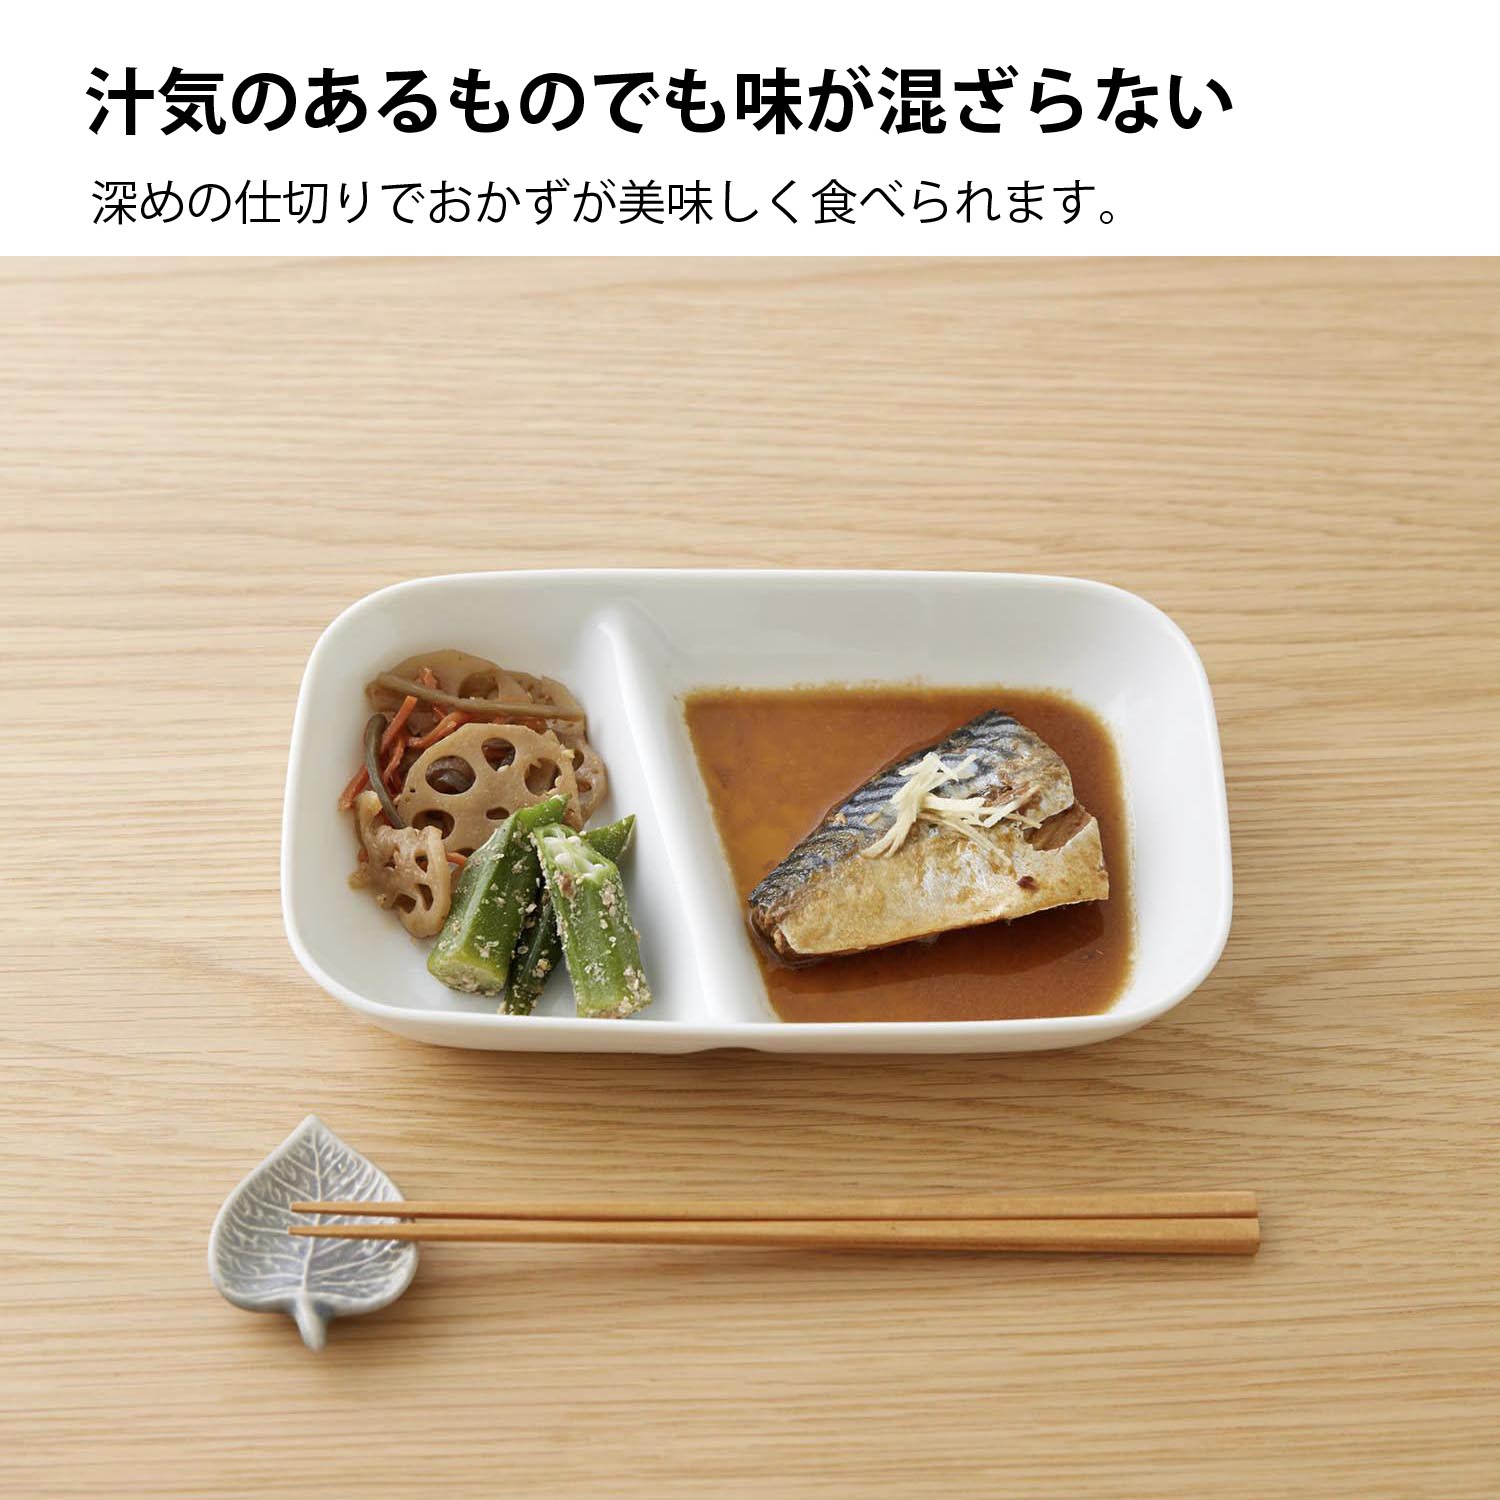 深めですくいやすいランチプレート2つ仕切り皿[日本製] 【お皿/平皿/カレー皿/さんま皿】 -